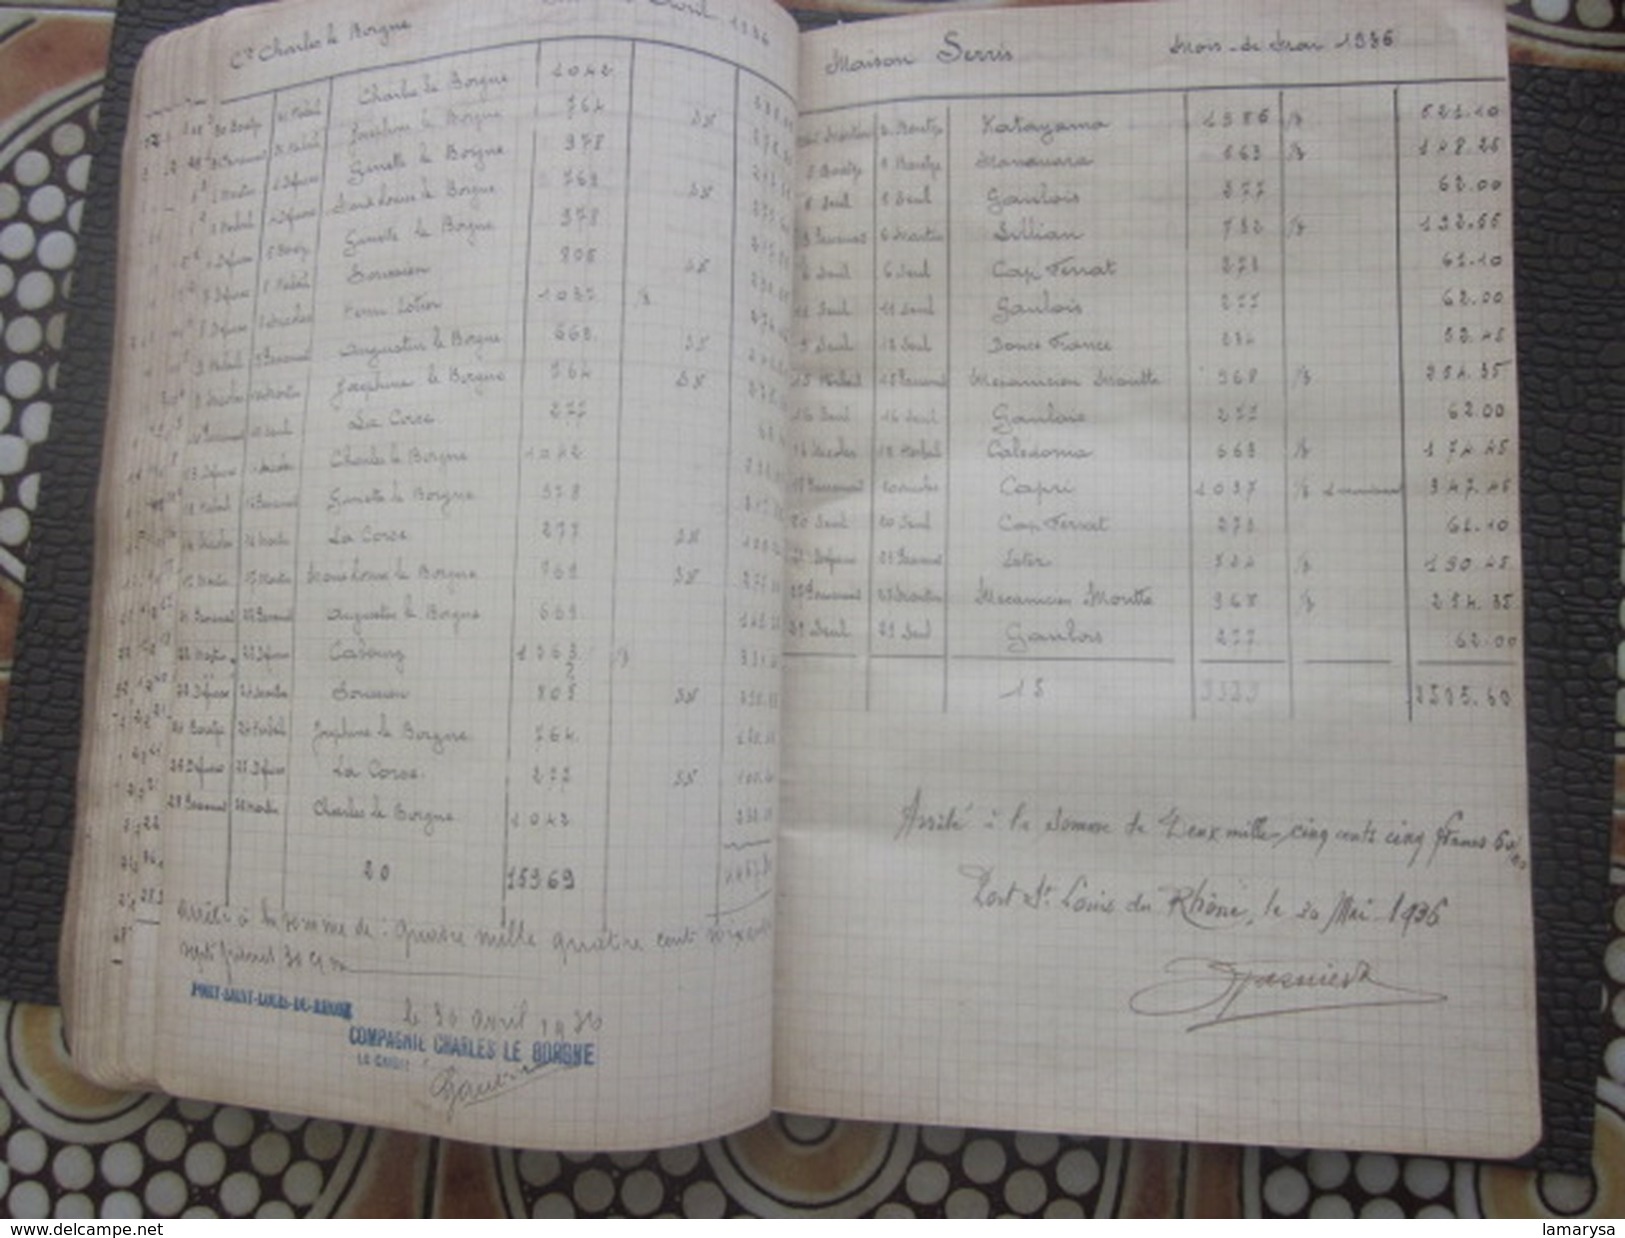 Pilotage Port-Saint-Louis-du-Rhone Relevé Factures 1935-36 Compagnie Maritime Noms Navires Dates-Bill of Lading-Registre